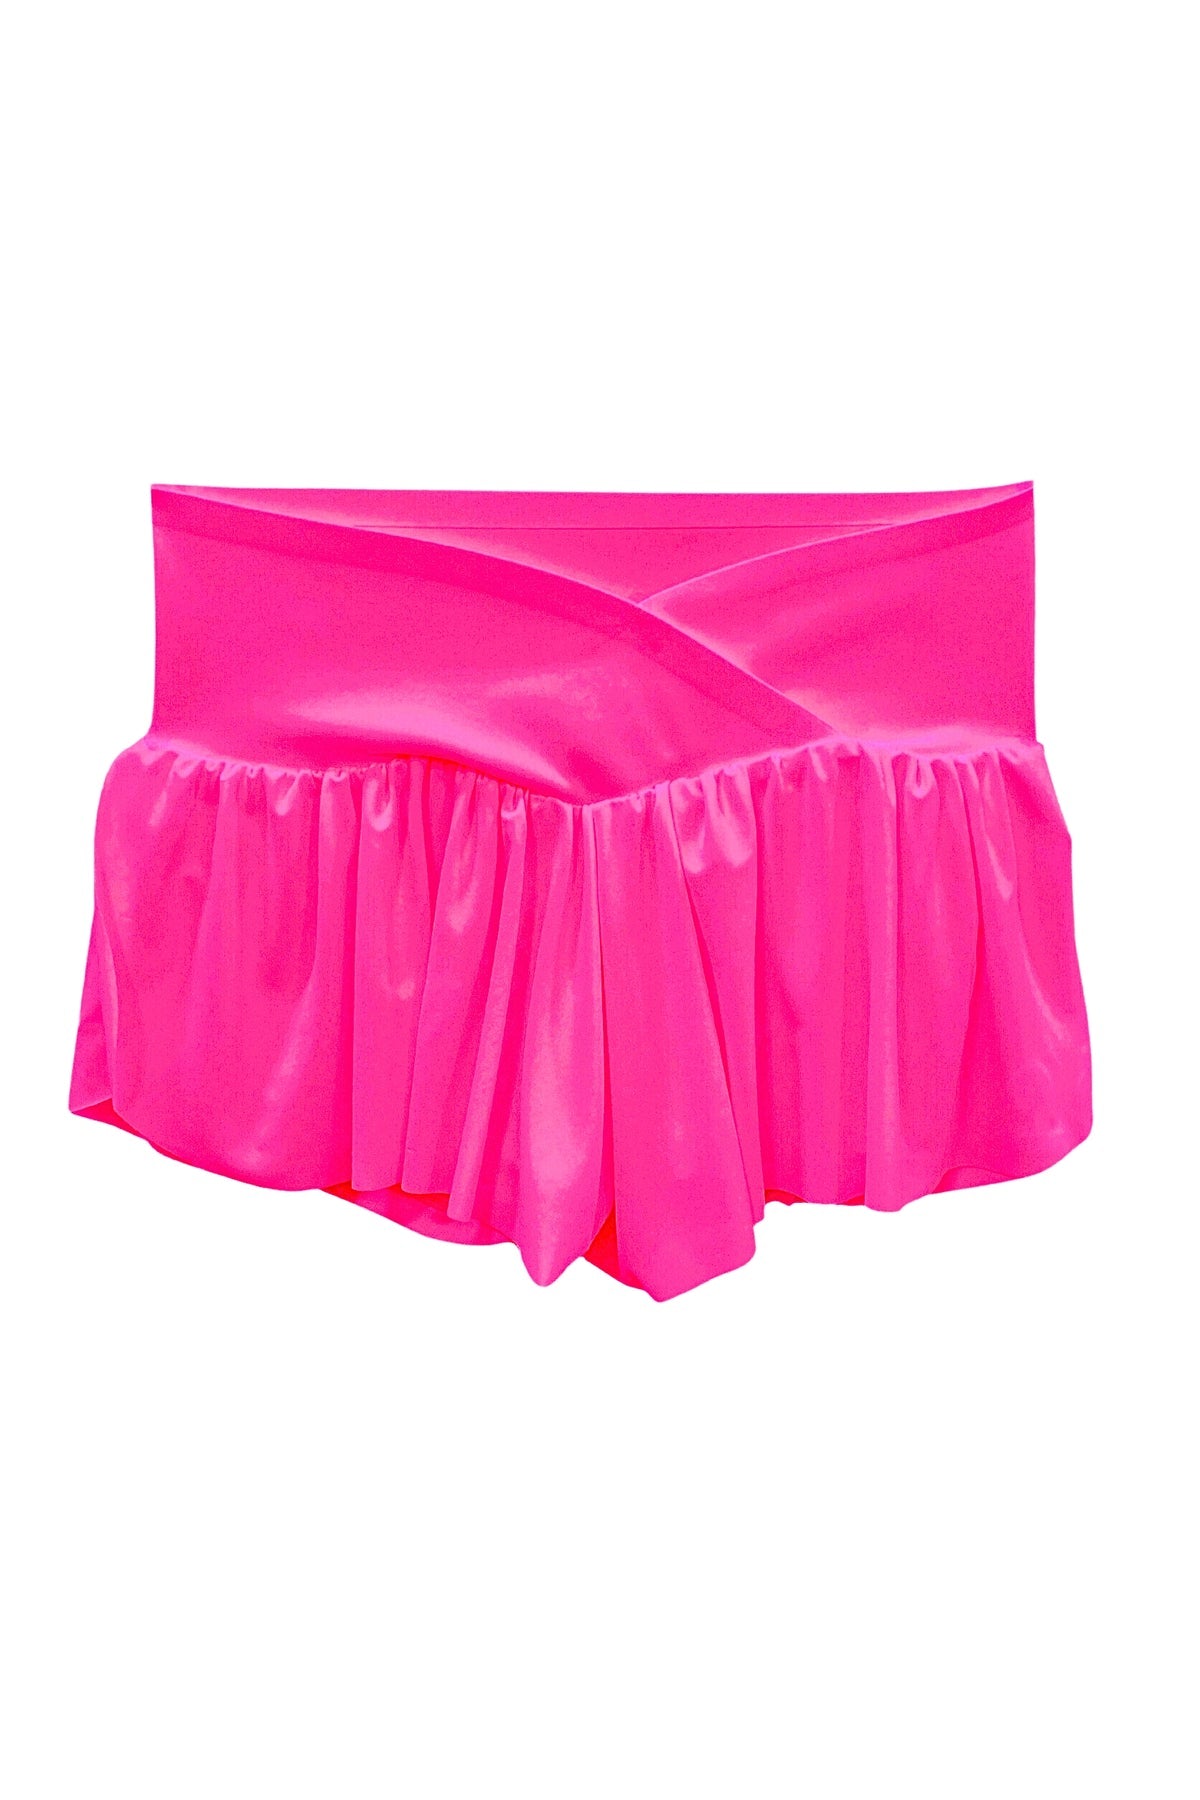 KatieJ NYC - Tween - Hot Pink Felicia Shorts